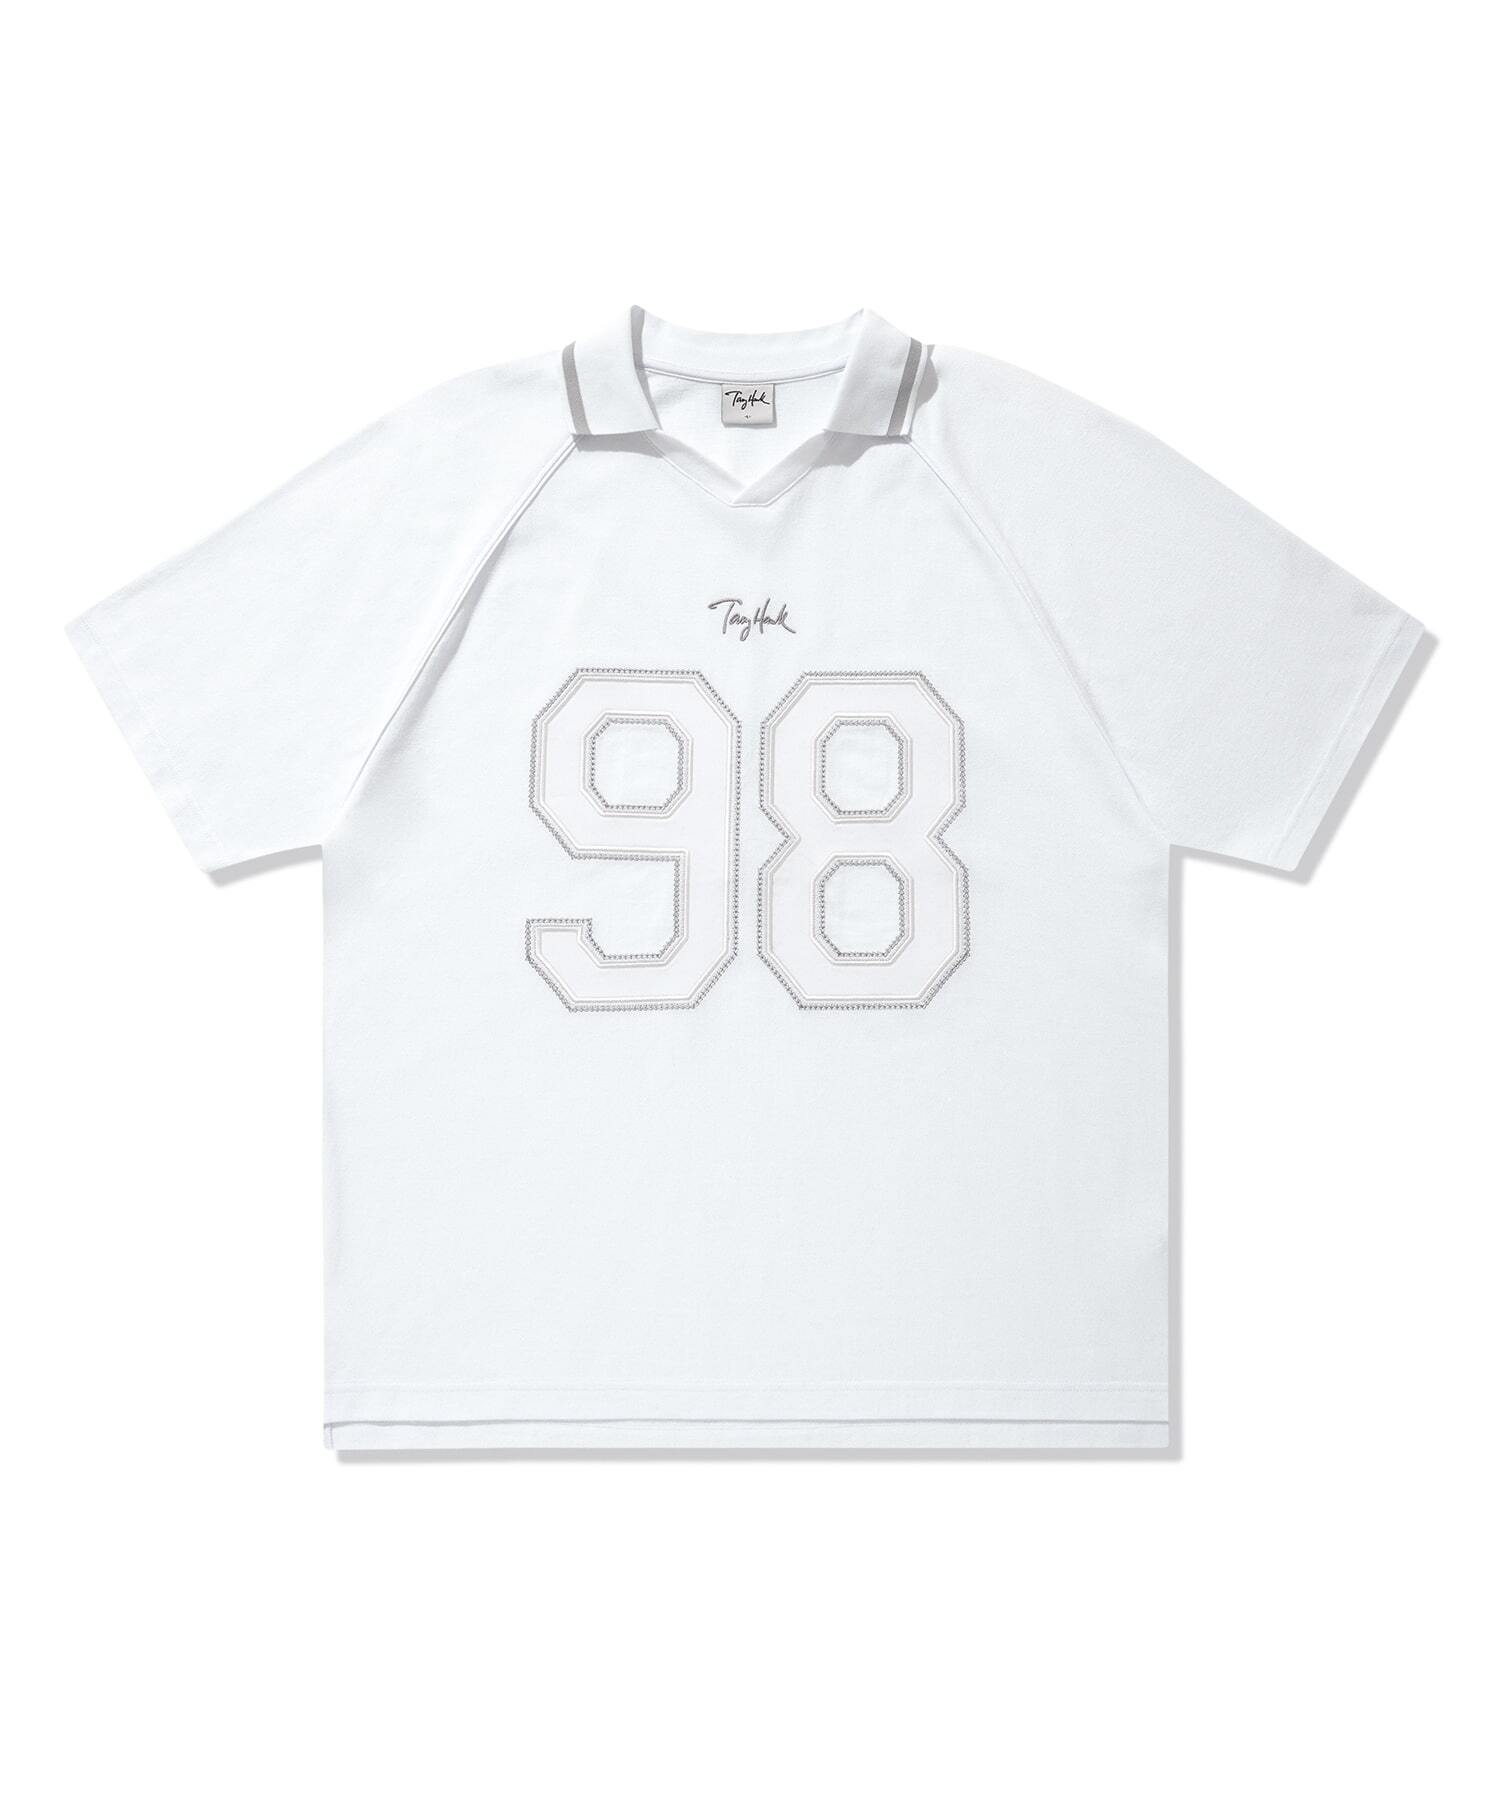 98 유니폼 라인 파이핑 피케 티셔츠 화이트